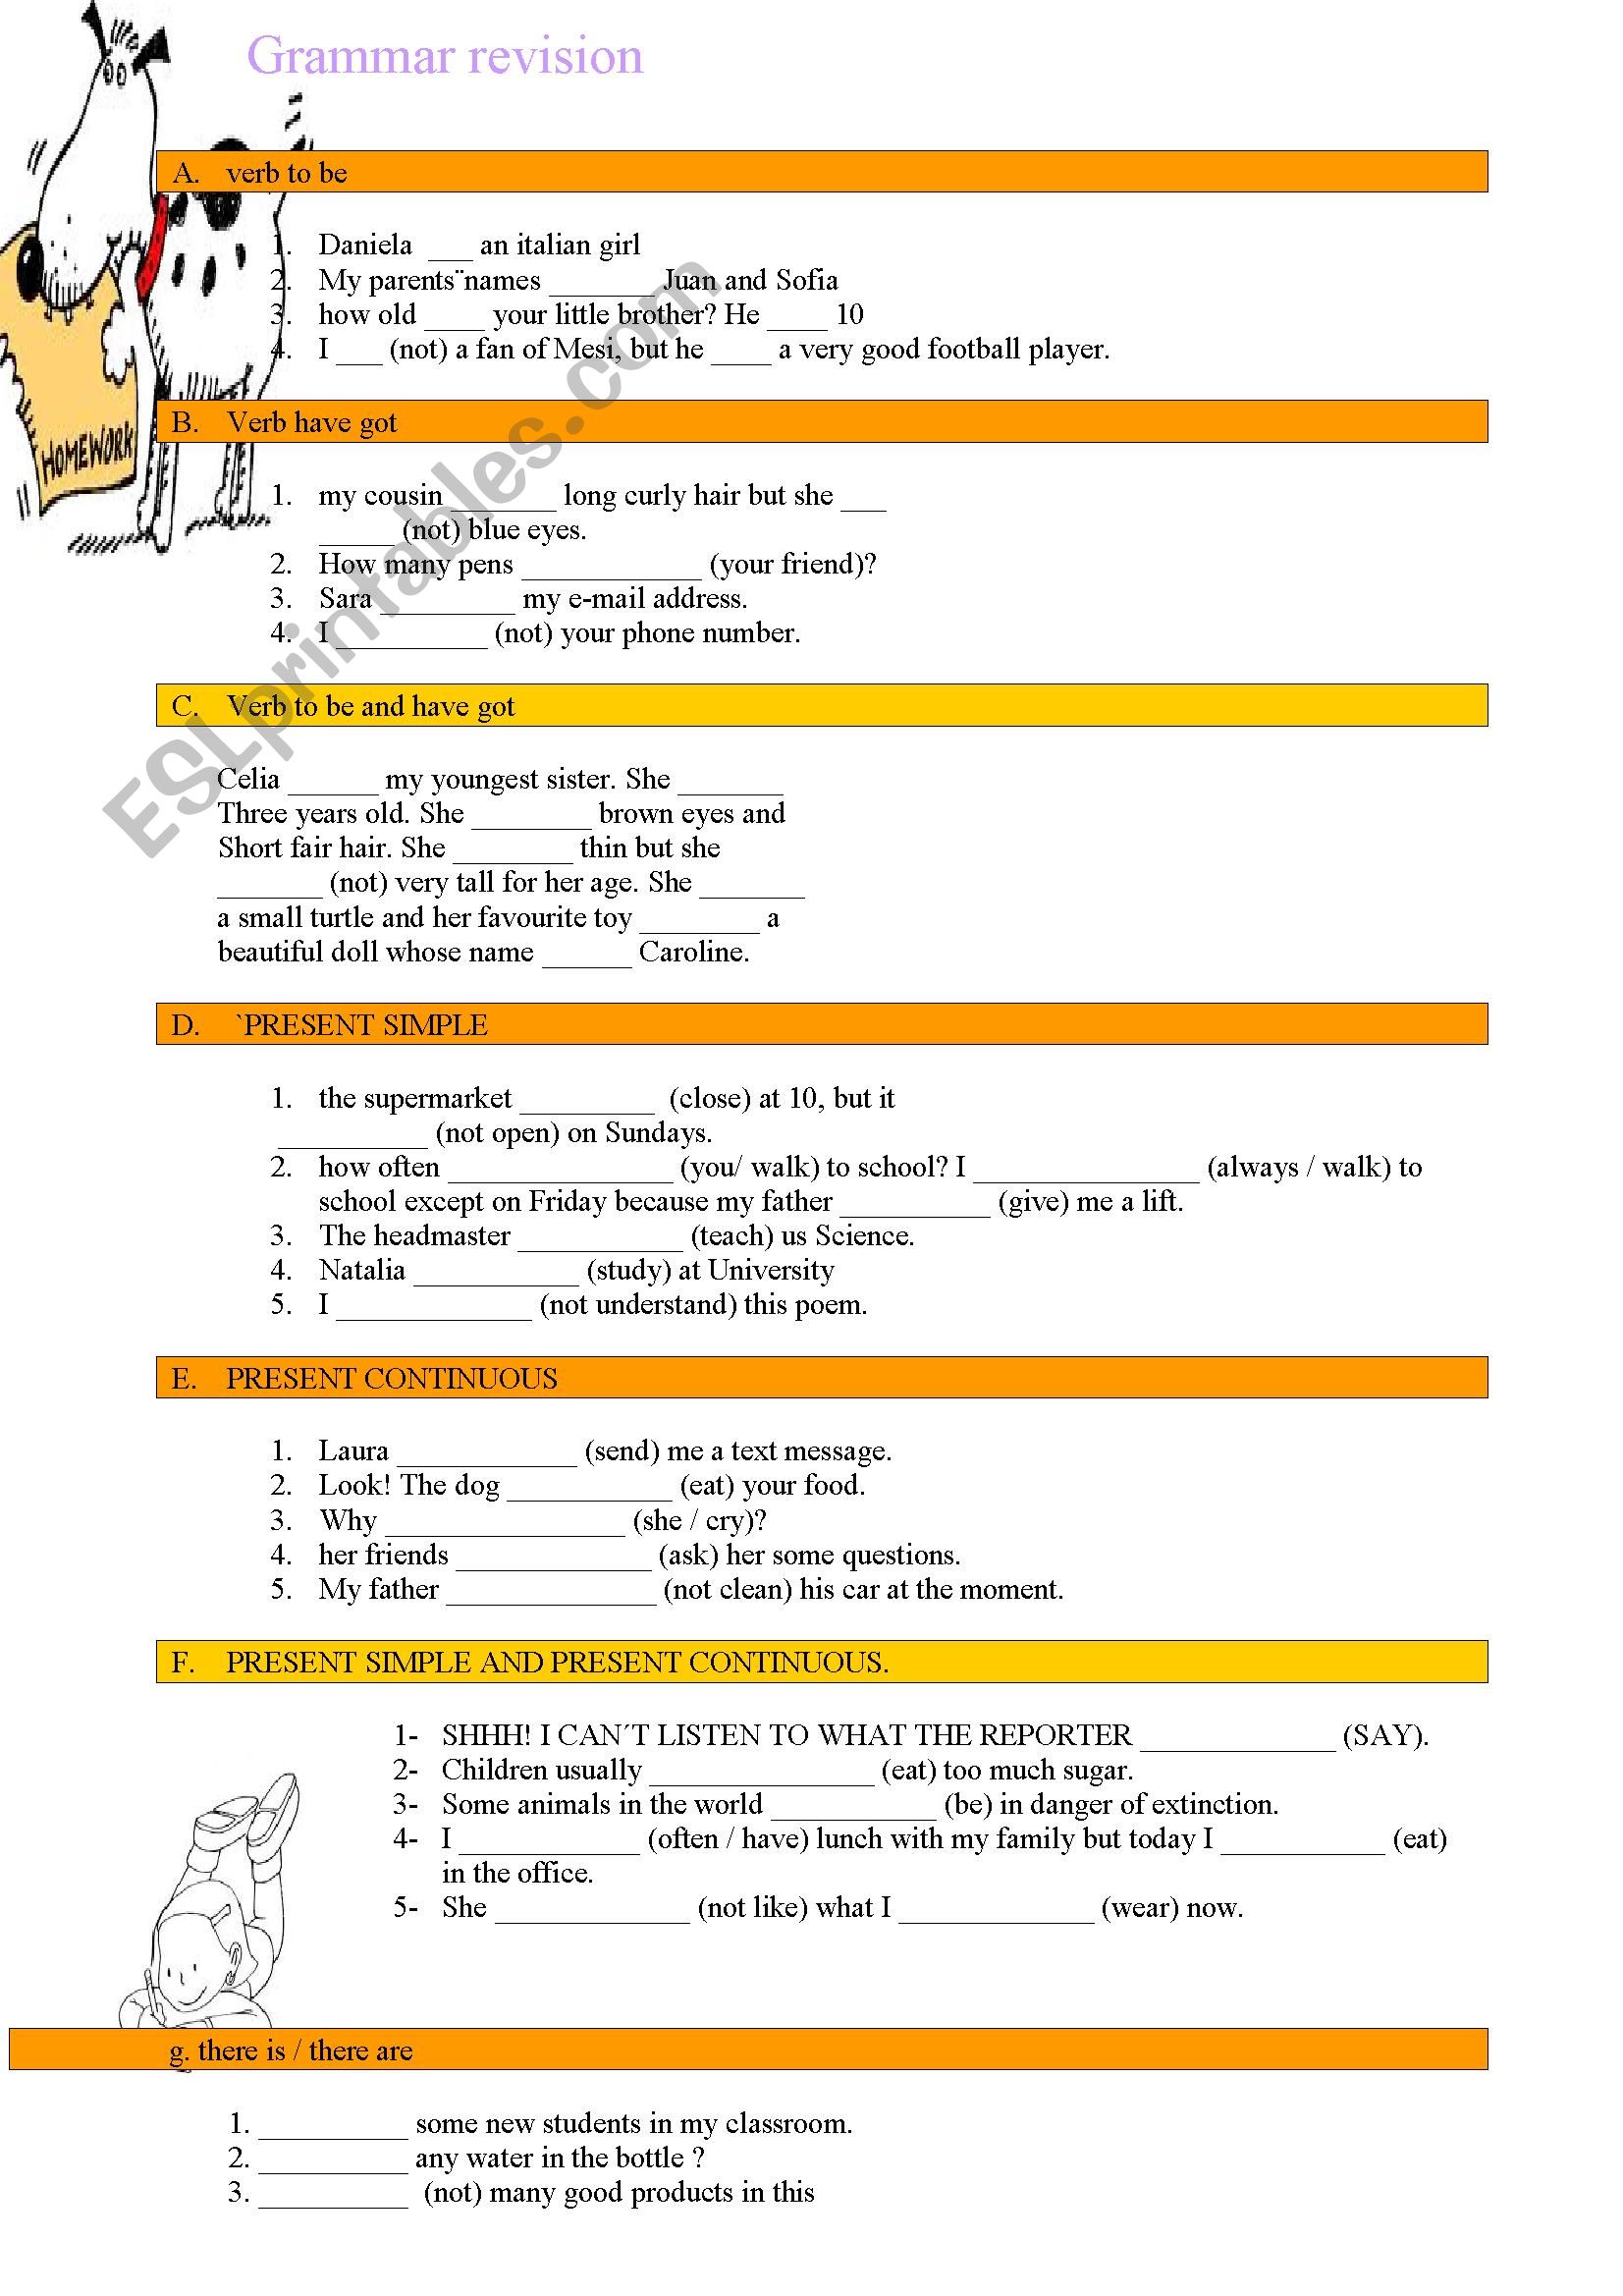 Grammar Revision ESL Worksheet By Roco